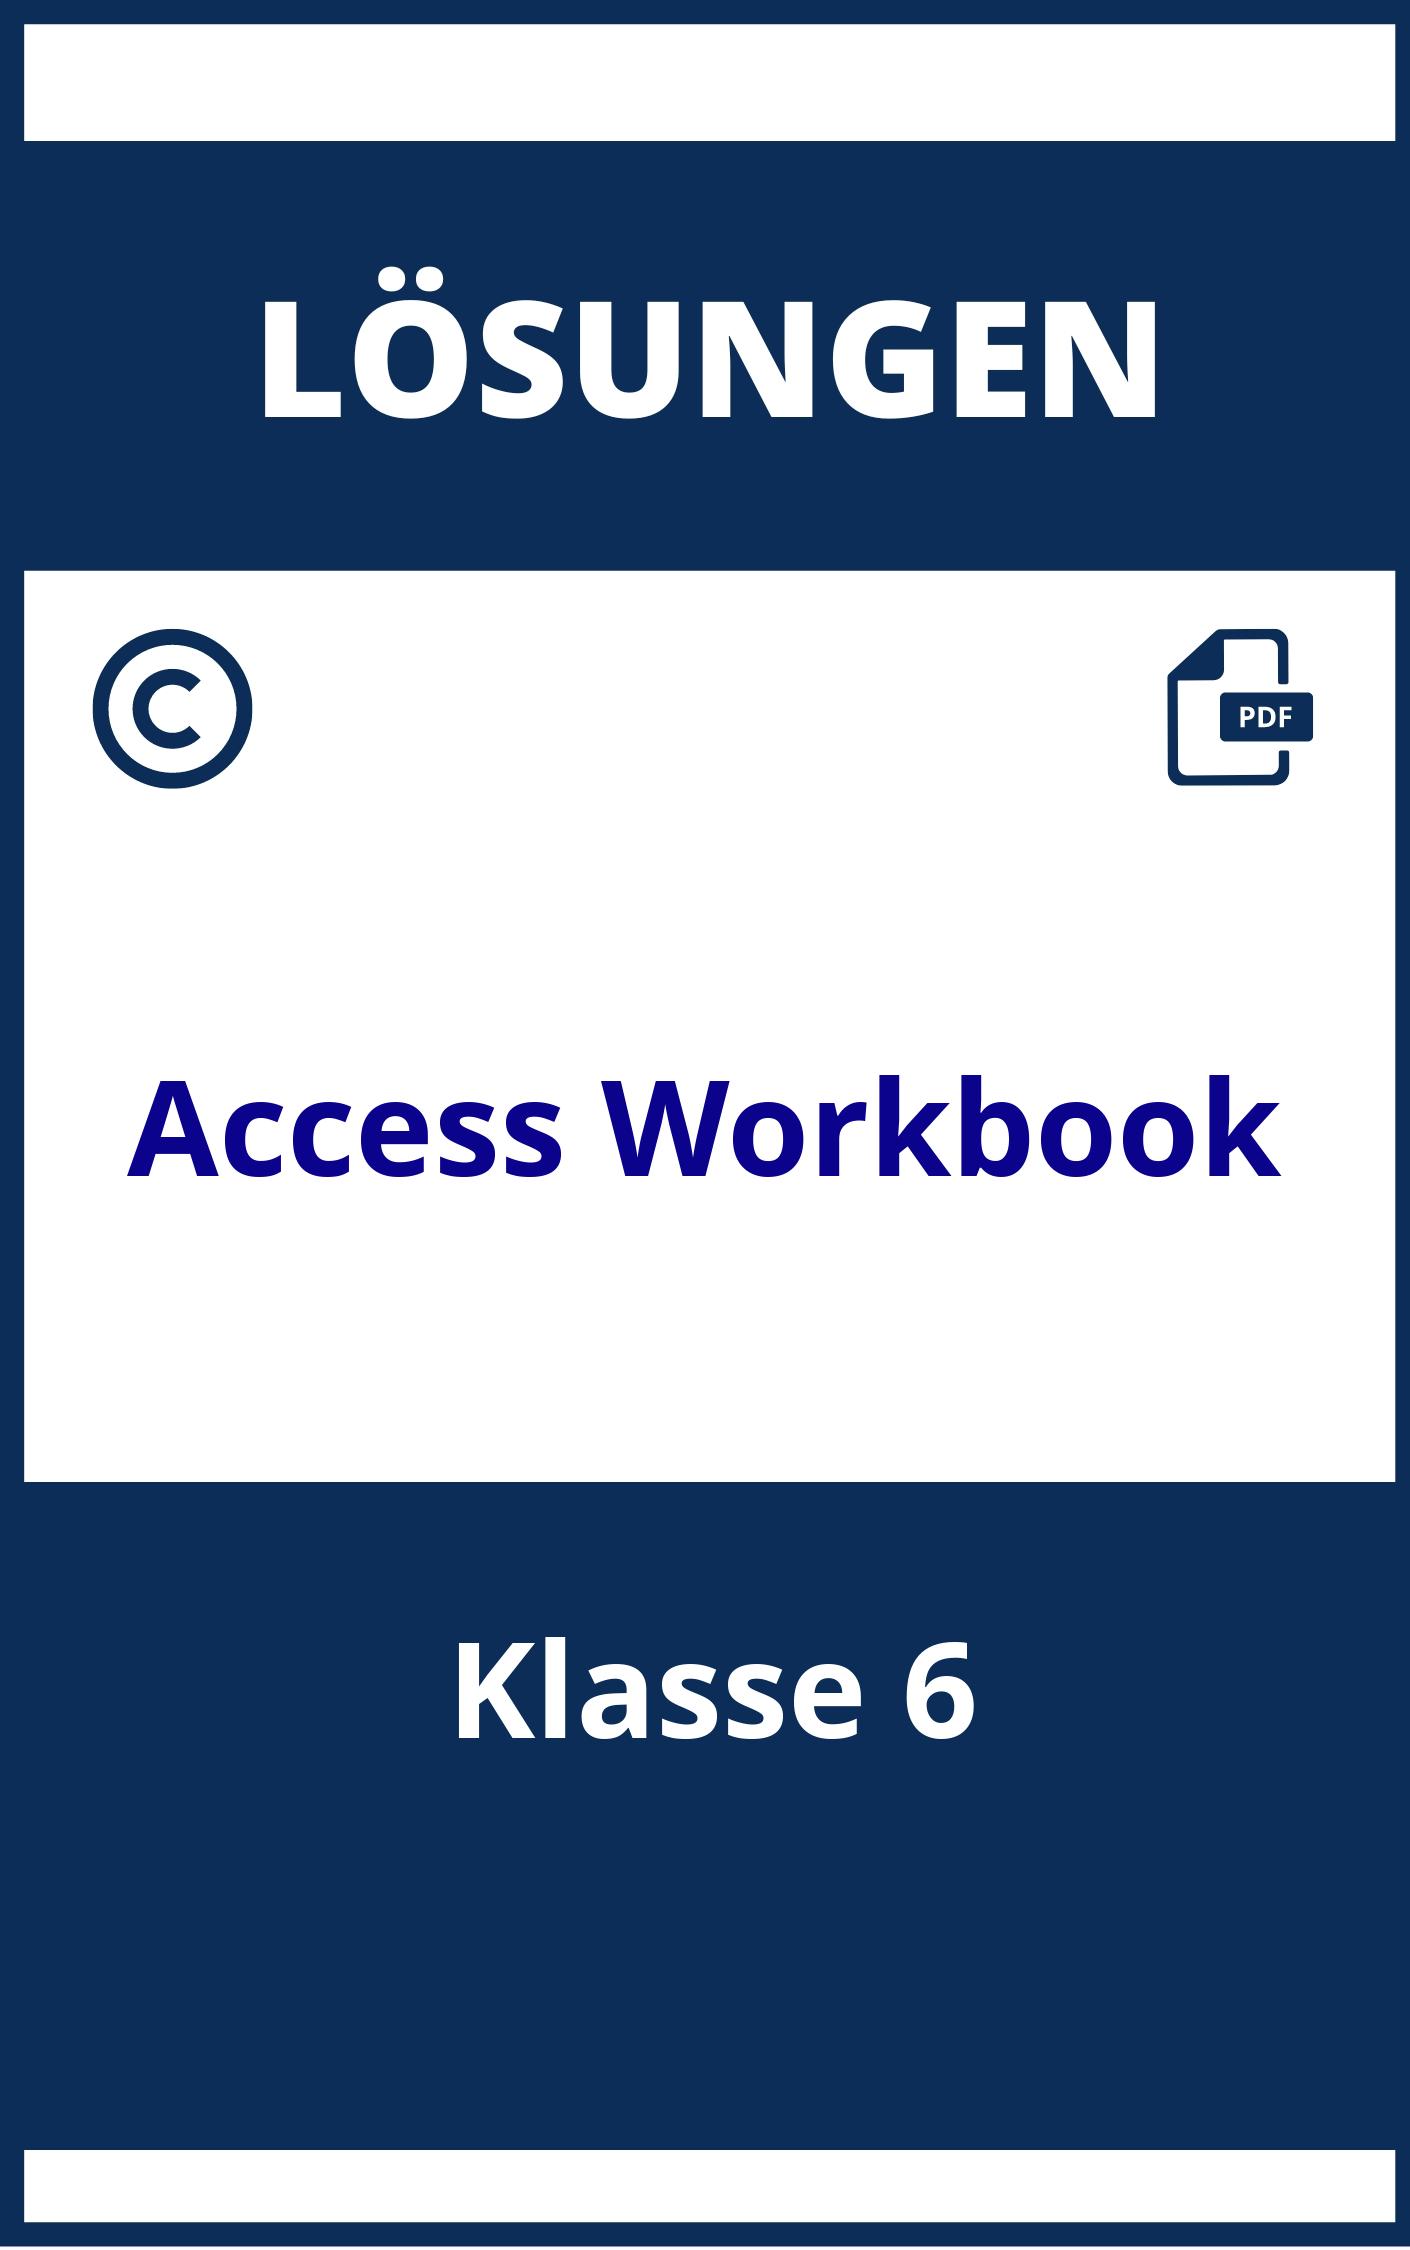 Lösungen Klasse 6 Access 2 Workbook Lösungen Pdf